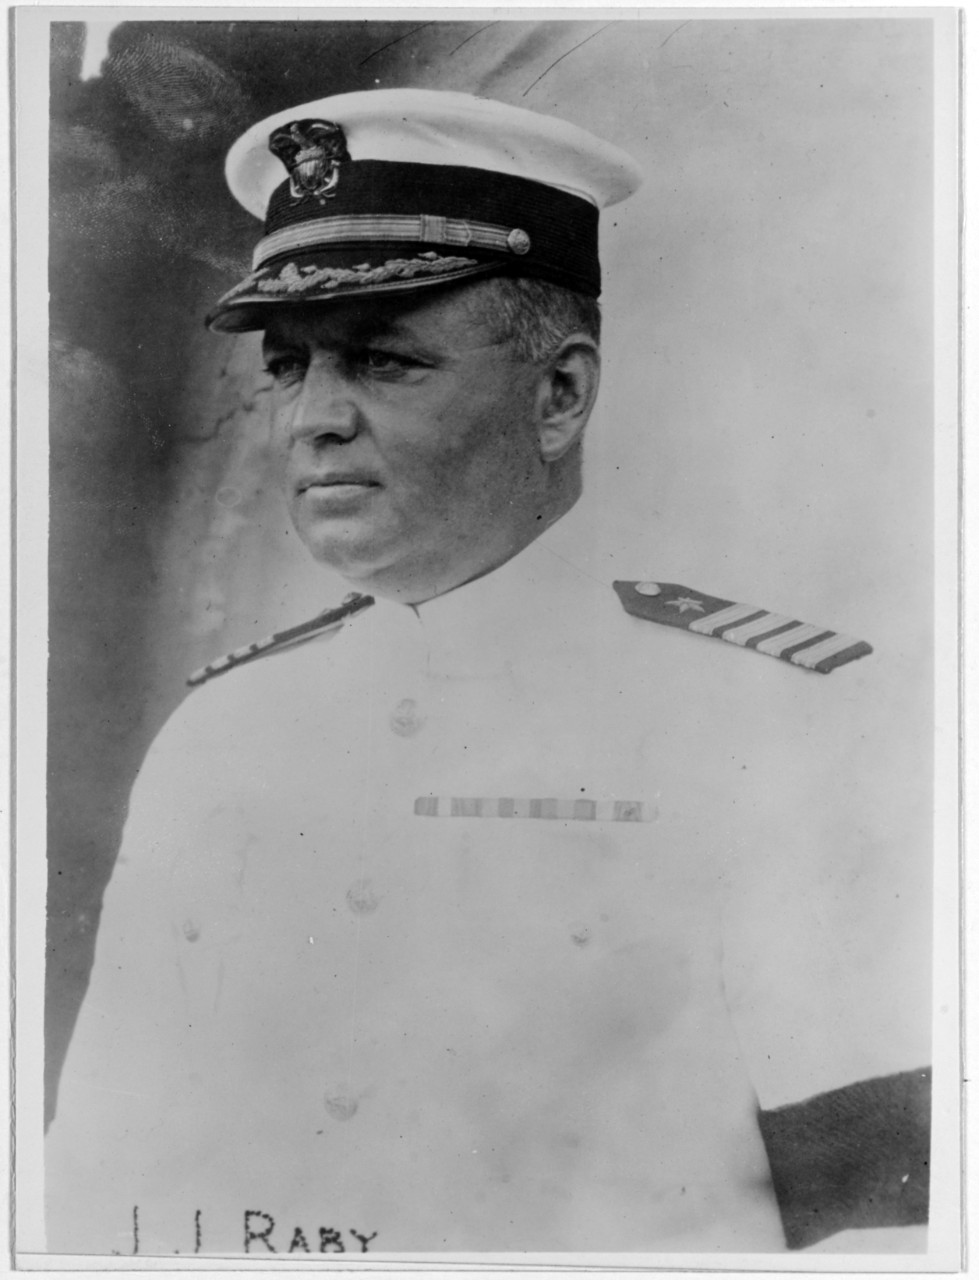 Captain James J. Raby, USN